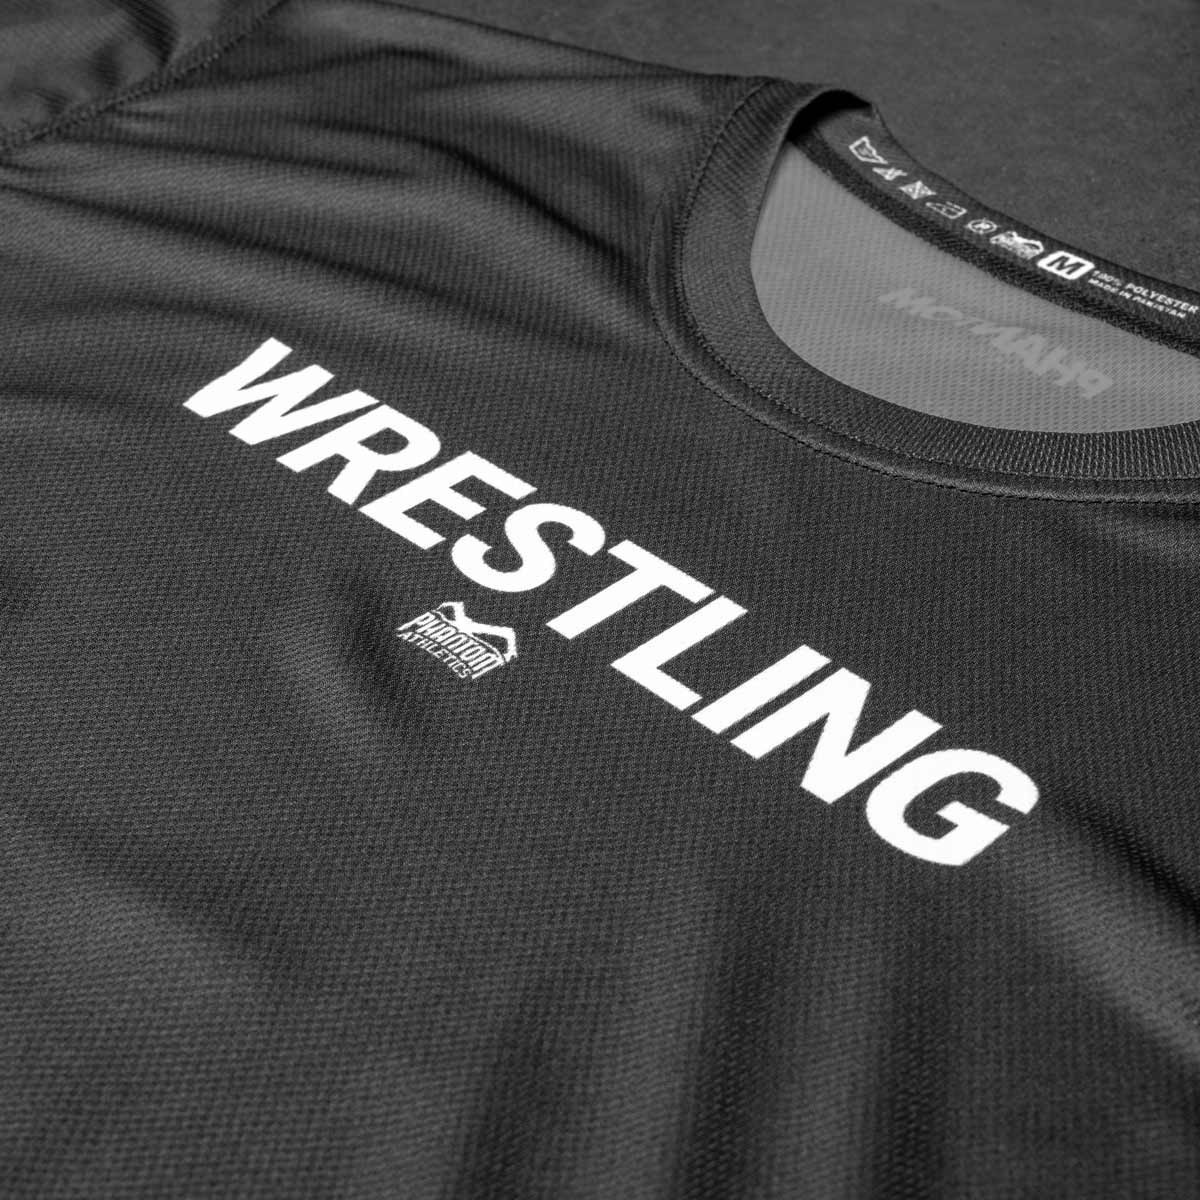 Das Phantom EVO Wrestling Trainingsshirt. Funktionales, atmungsaktives Material für dein Ringertraining. Hochwertiger Sublimationsdruck für ein cleanes Design.